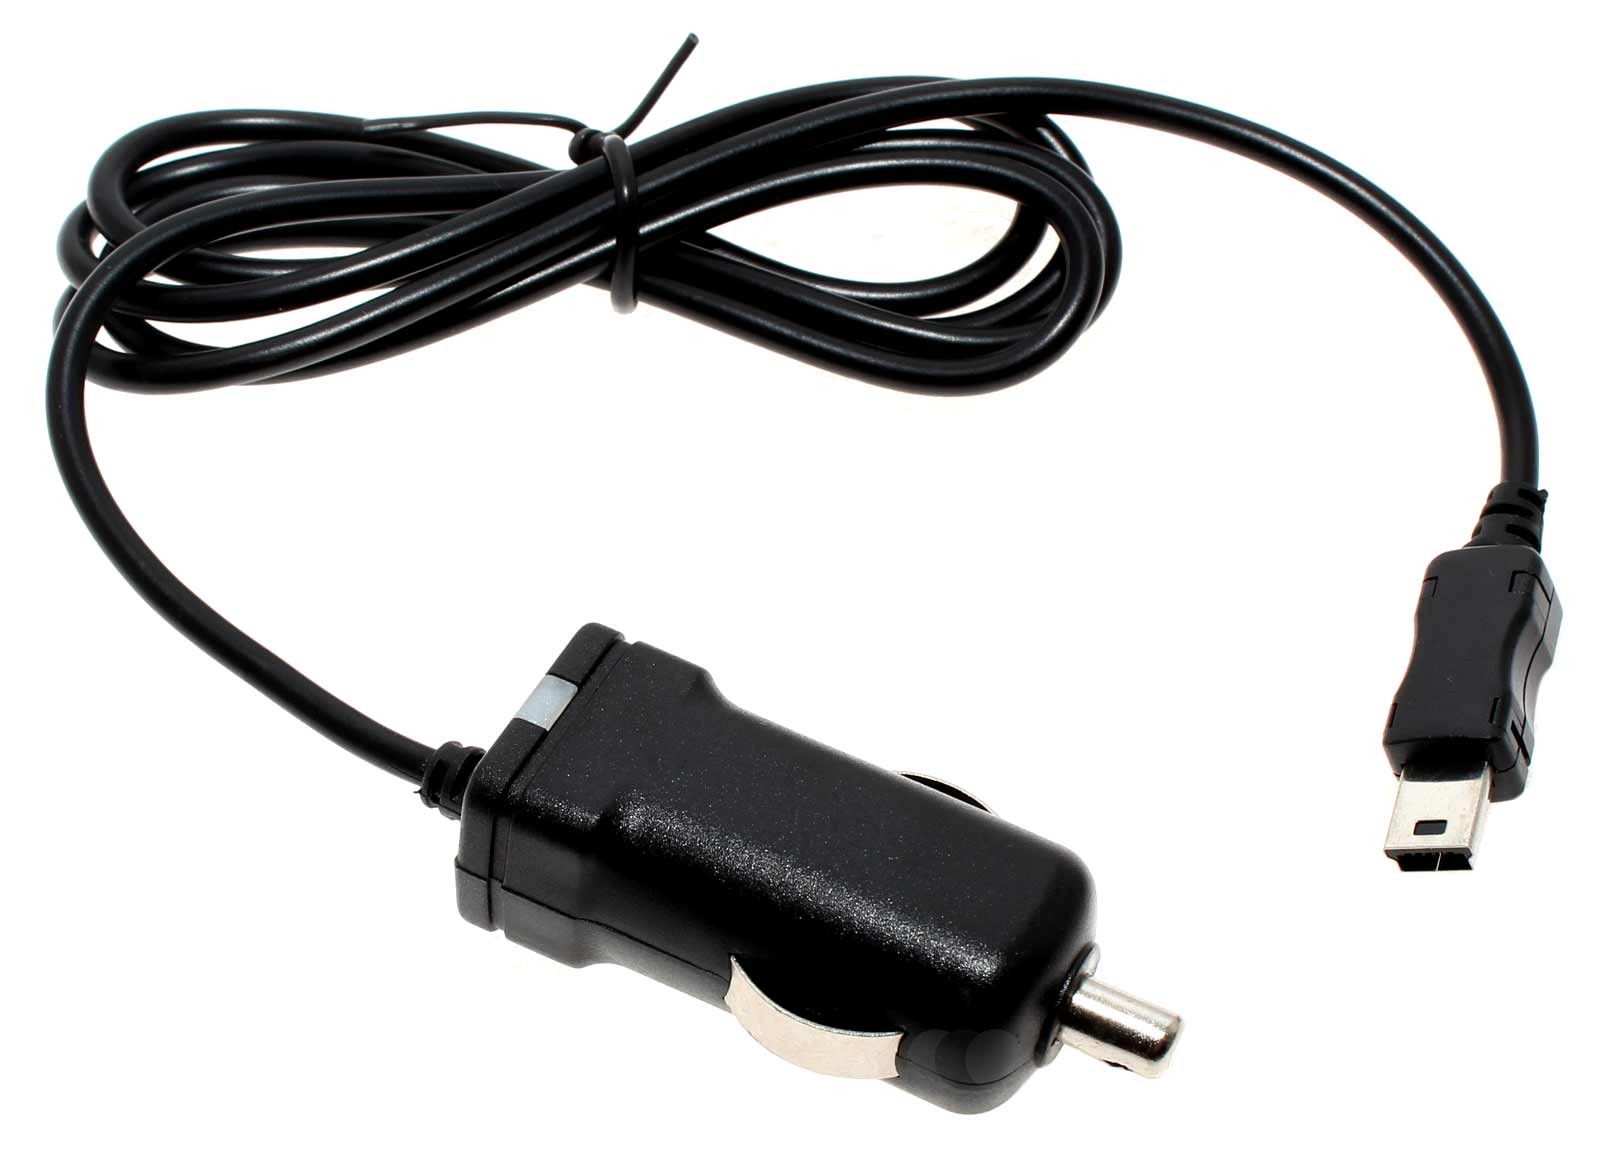 Alternatives 12 Volt/  24 Volt KFZ Ladekabel für Geräte mit Mini USB Anschluß mit integrierter TMC Antenne und Betriebs-LED Anzeige für Navigon Live